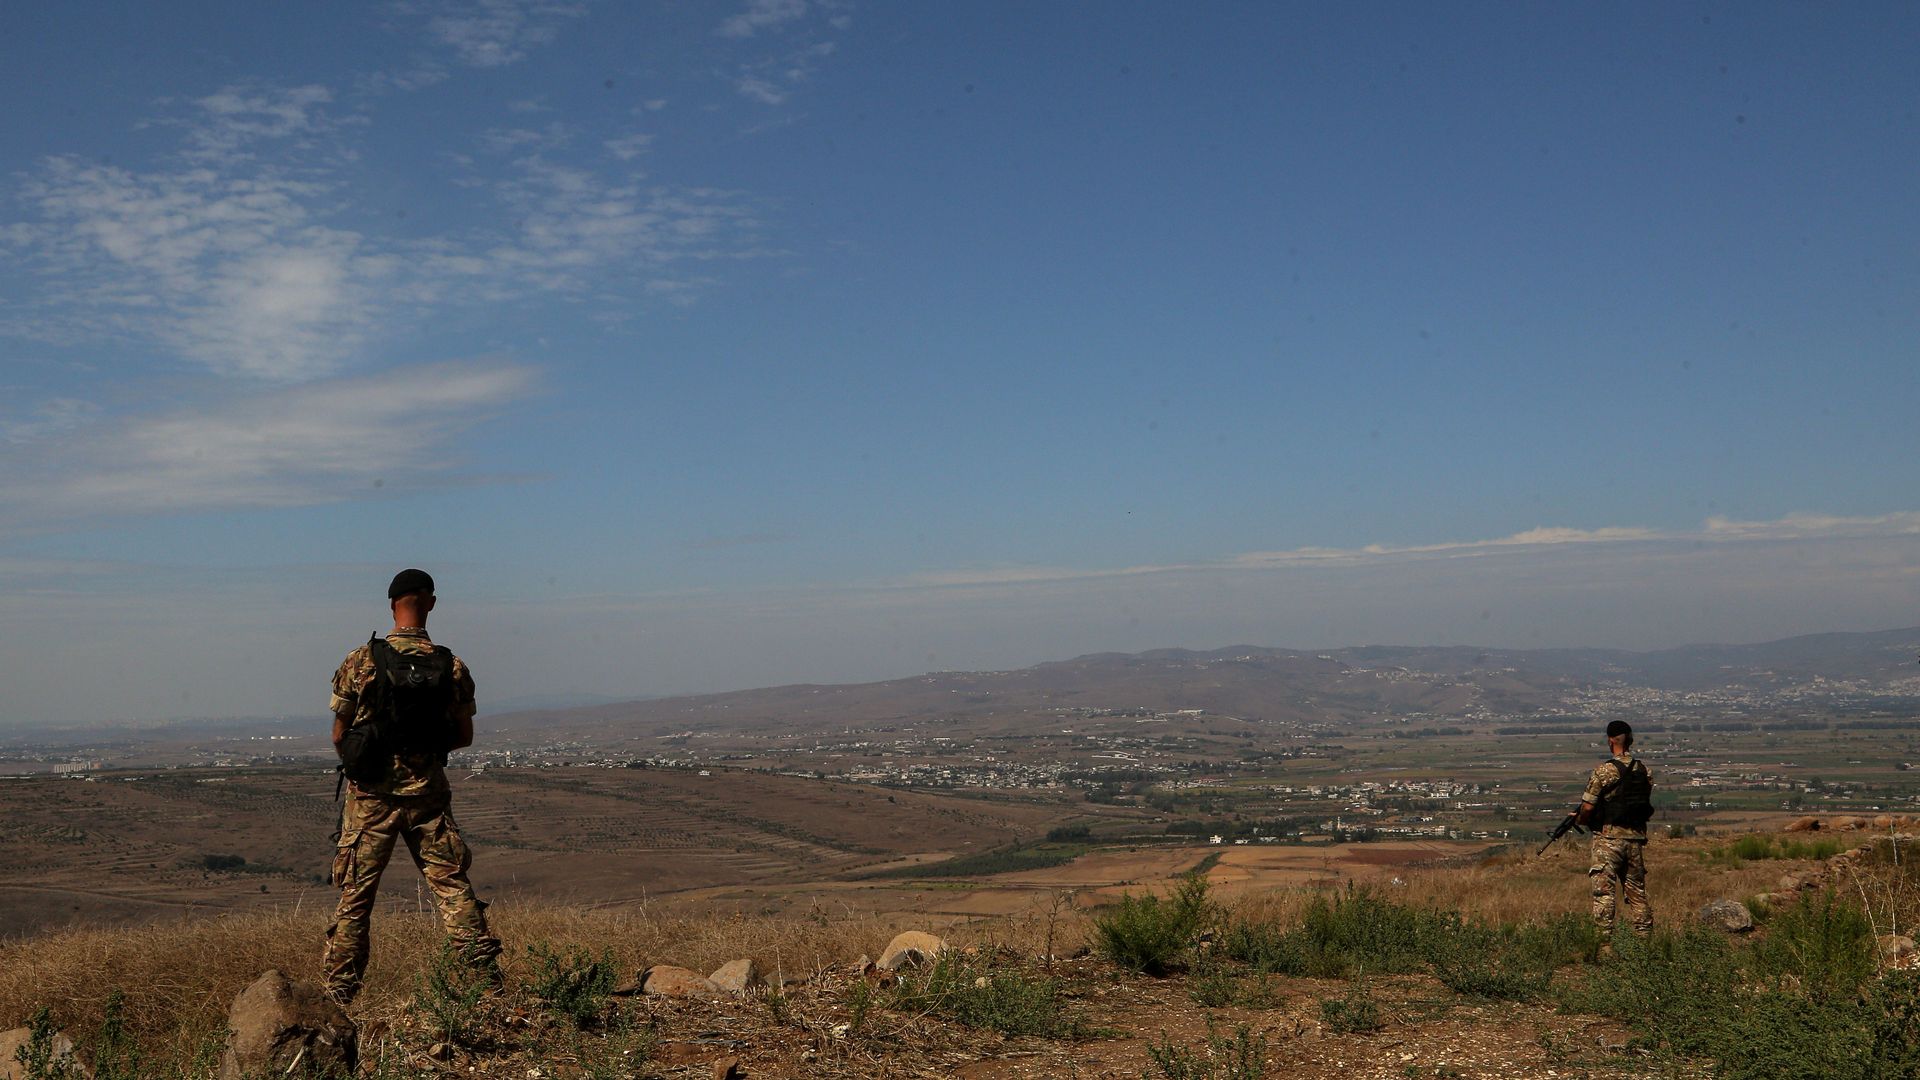 In das Gebiet von Wadi Khaled an der libanesisch-syrischen Grenze im Nordlibanon flüchten täglich Hunderte Menschen.